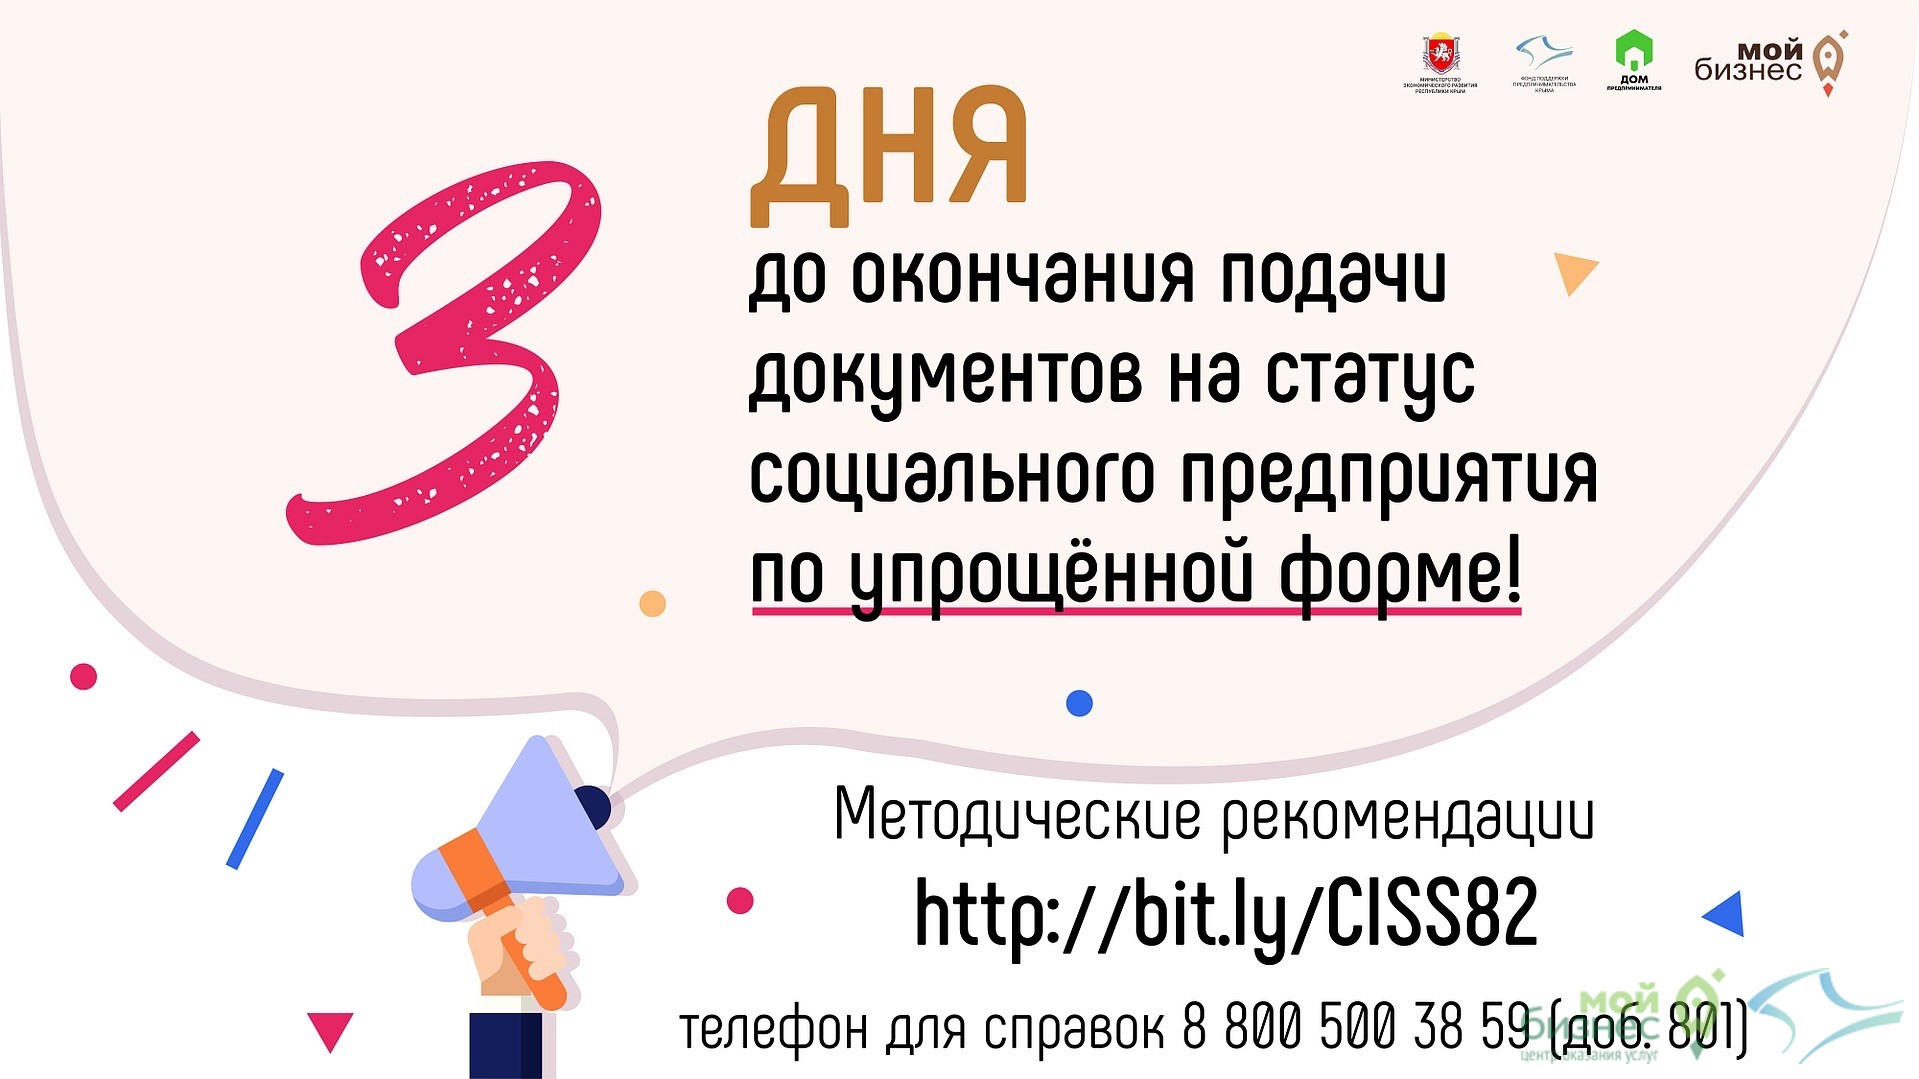 В Республике Крым идет прием документов на признание предпринимателей и юридических лиц социальными предприятиями